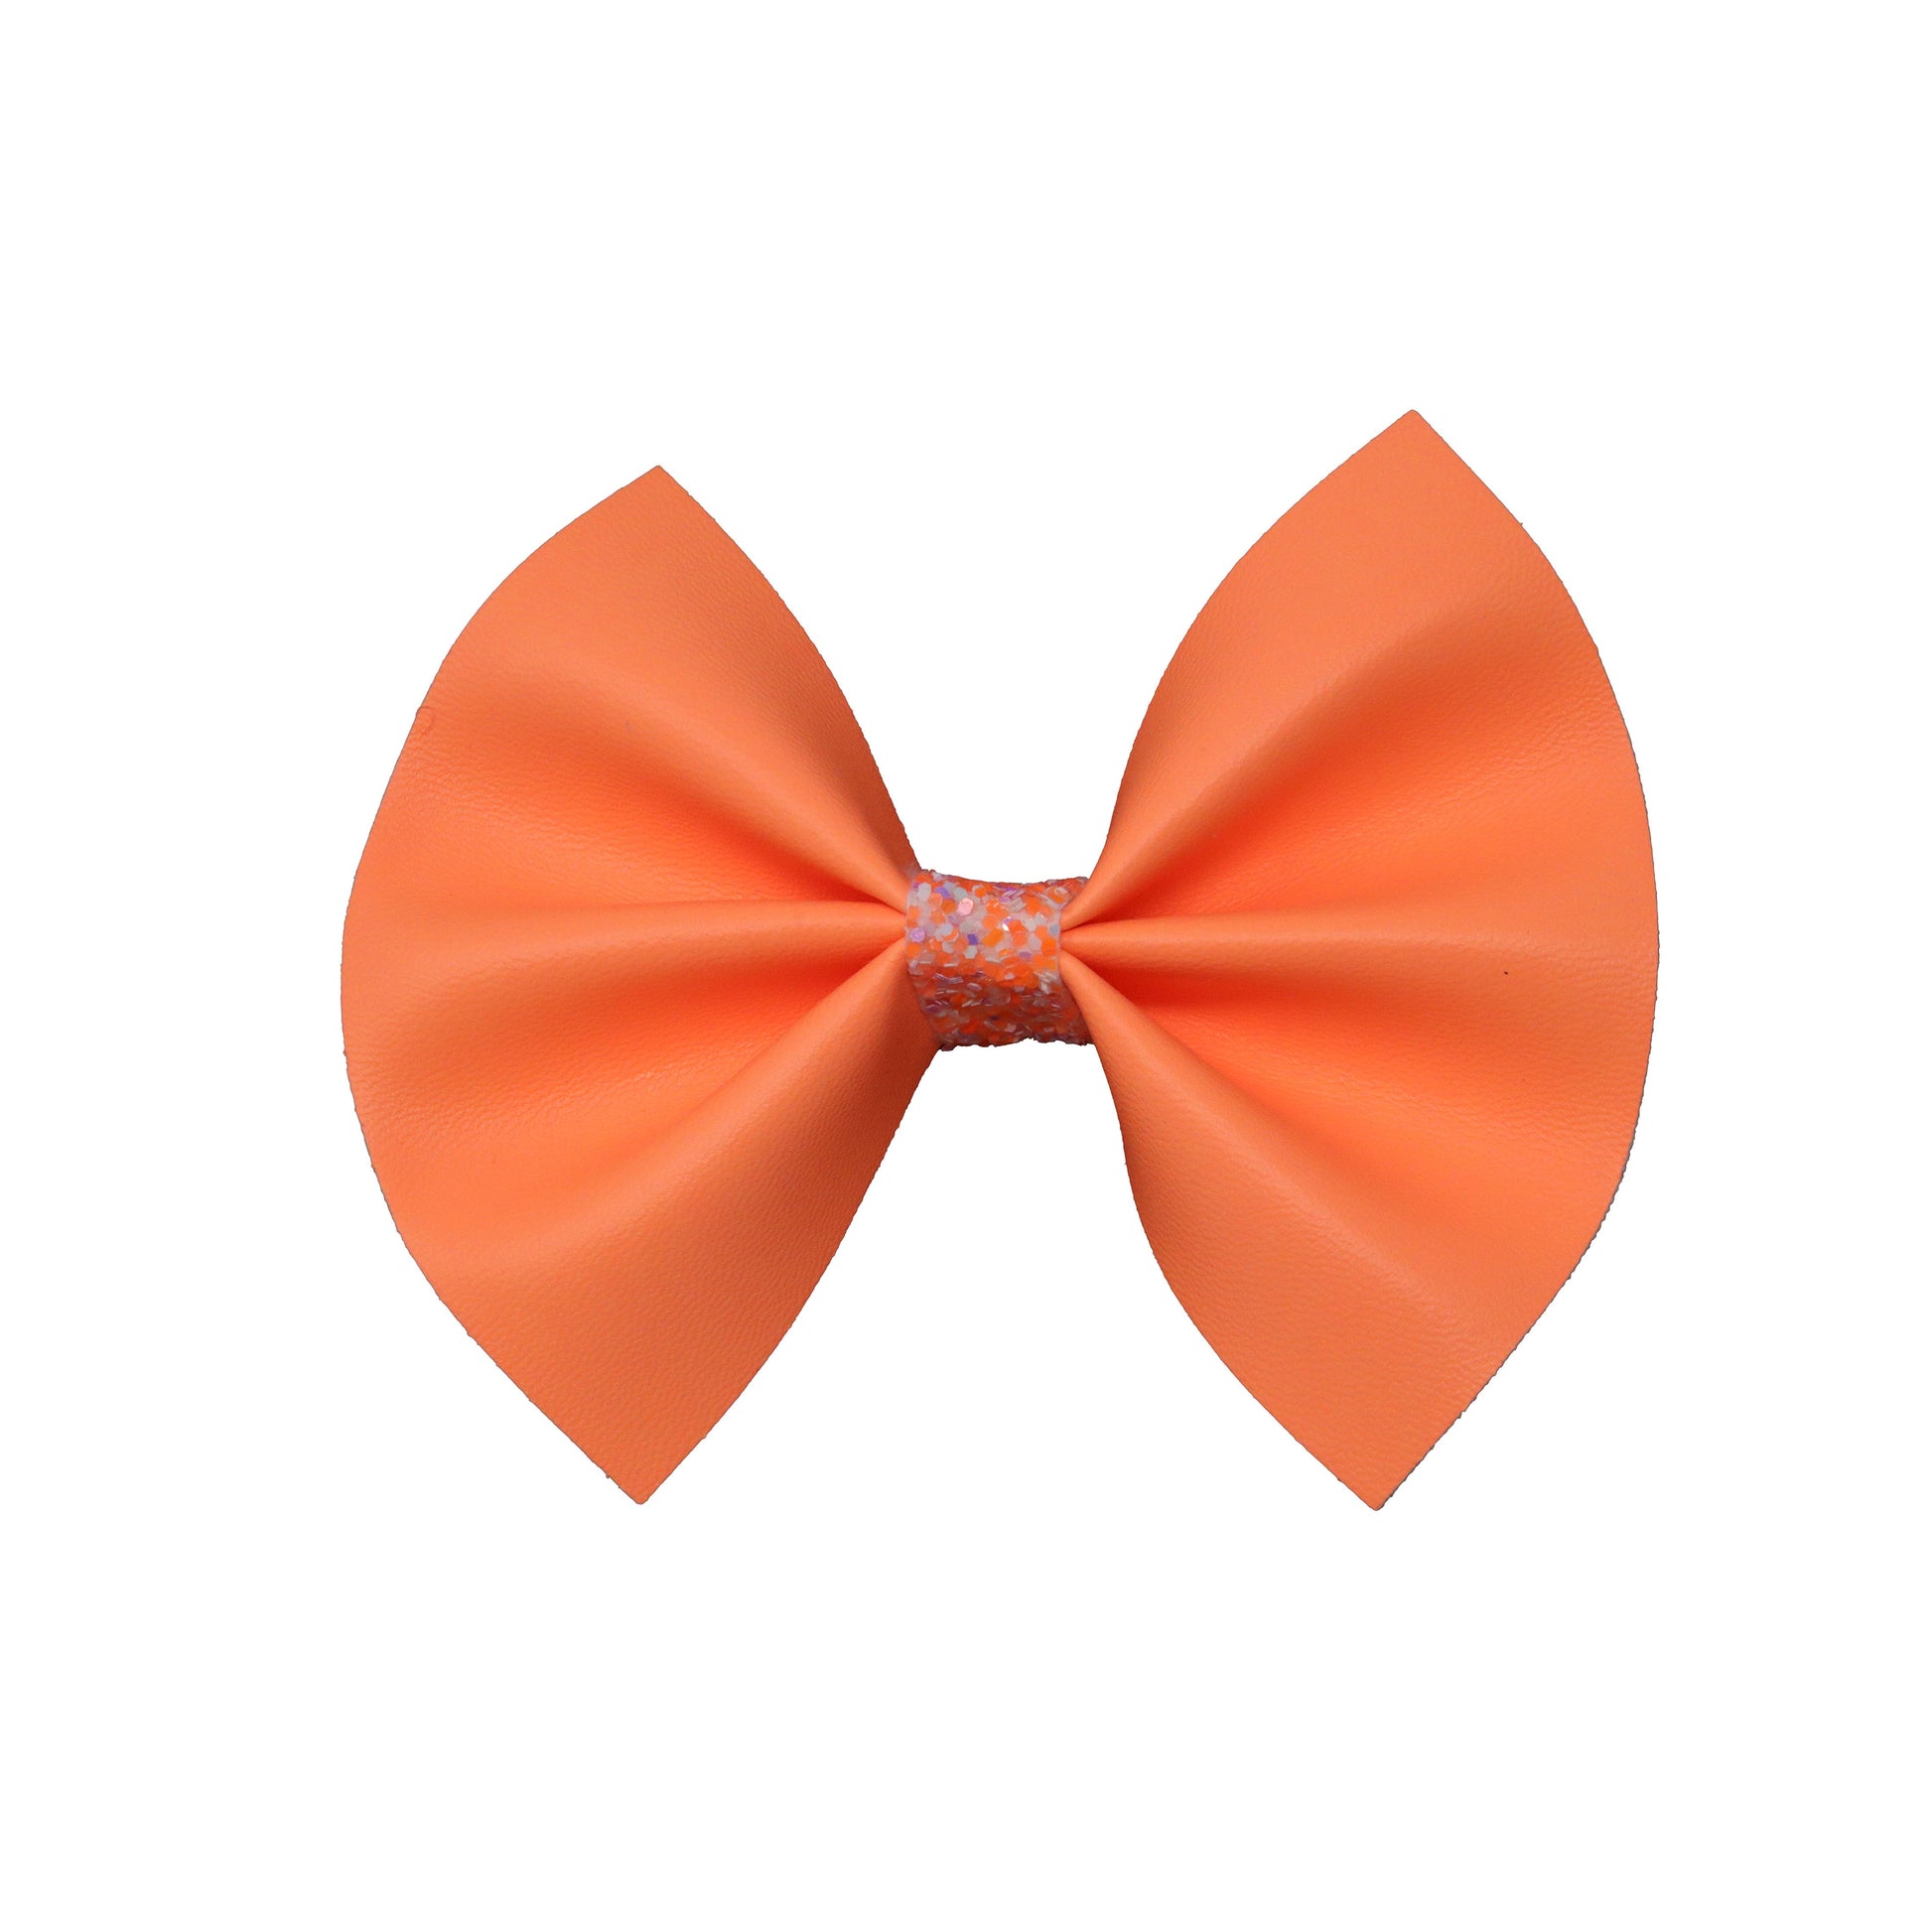 Neon Orange Pinch Bow 4"